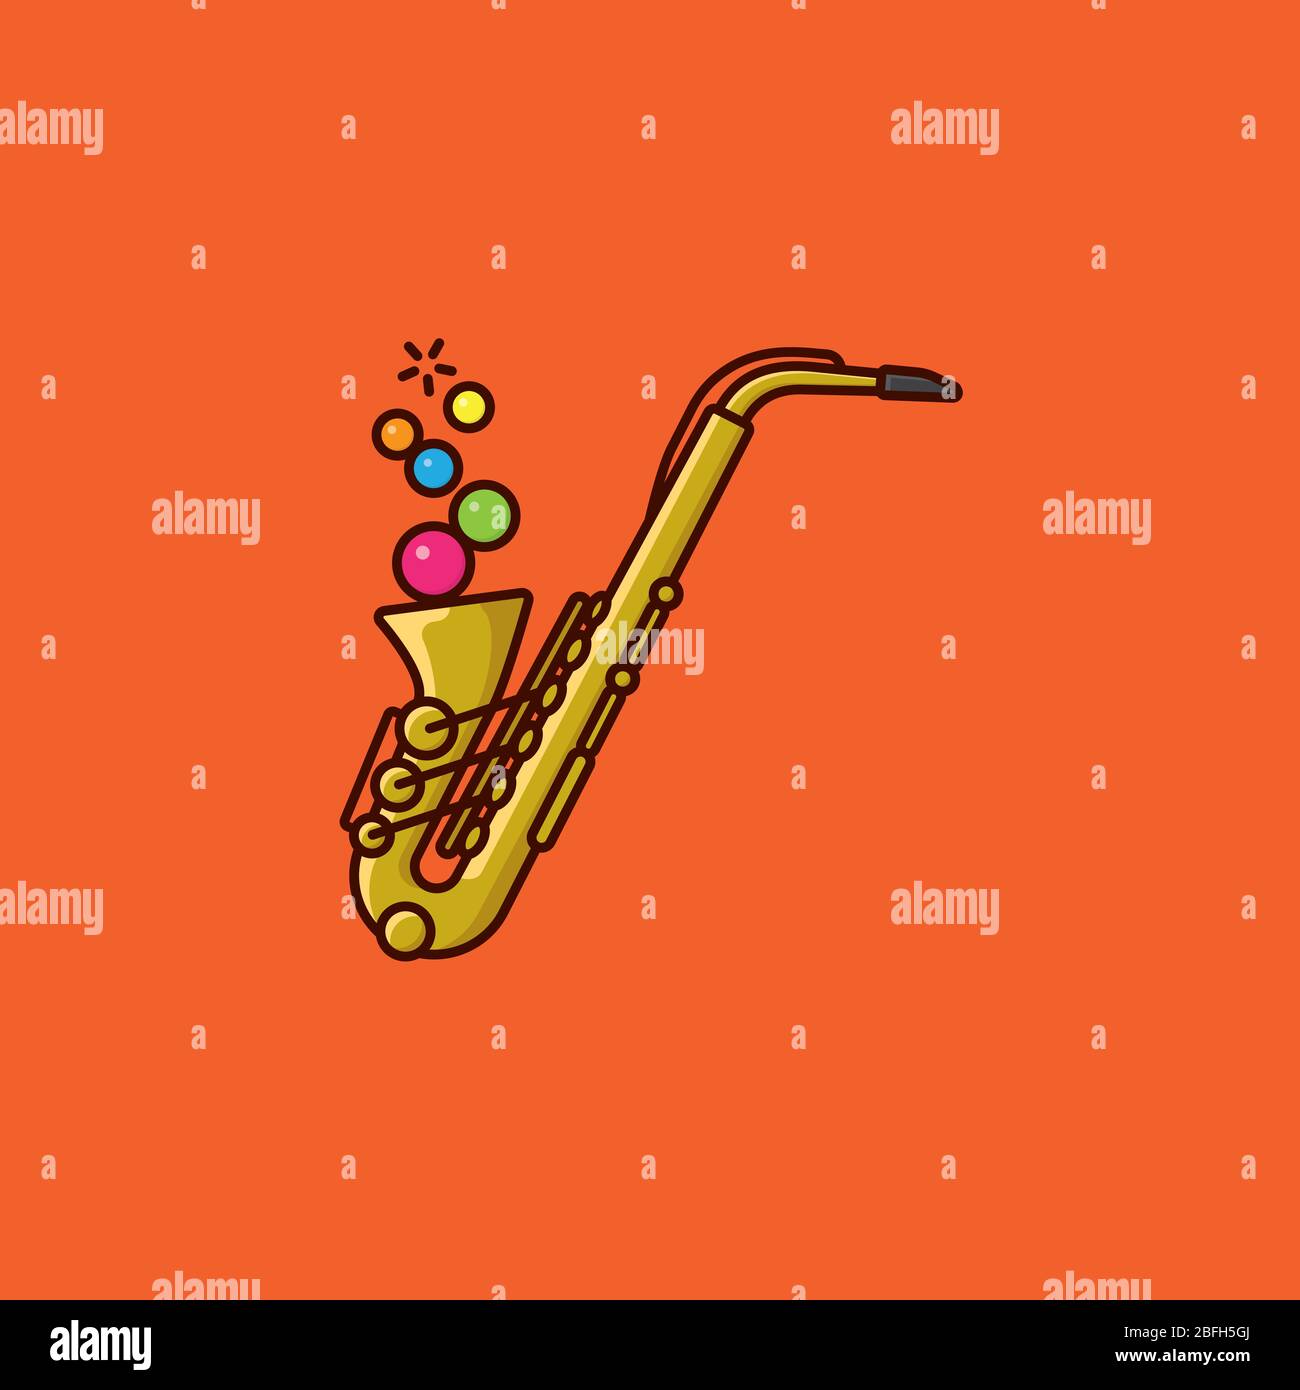 Saxophon bläst bunte Blasen Vektor-Illustration für den Internationalen Jazztag am 30. April. Symbol für zeitgenössische Musik. Stock Vektor